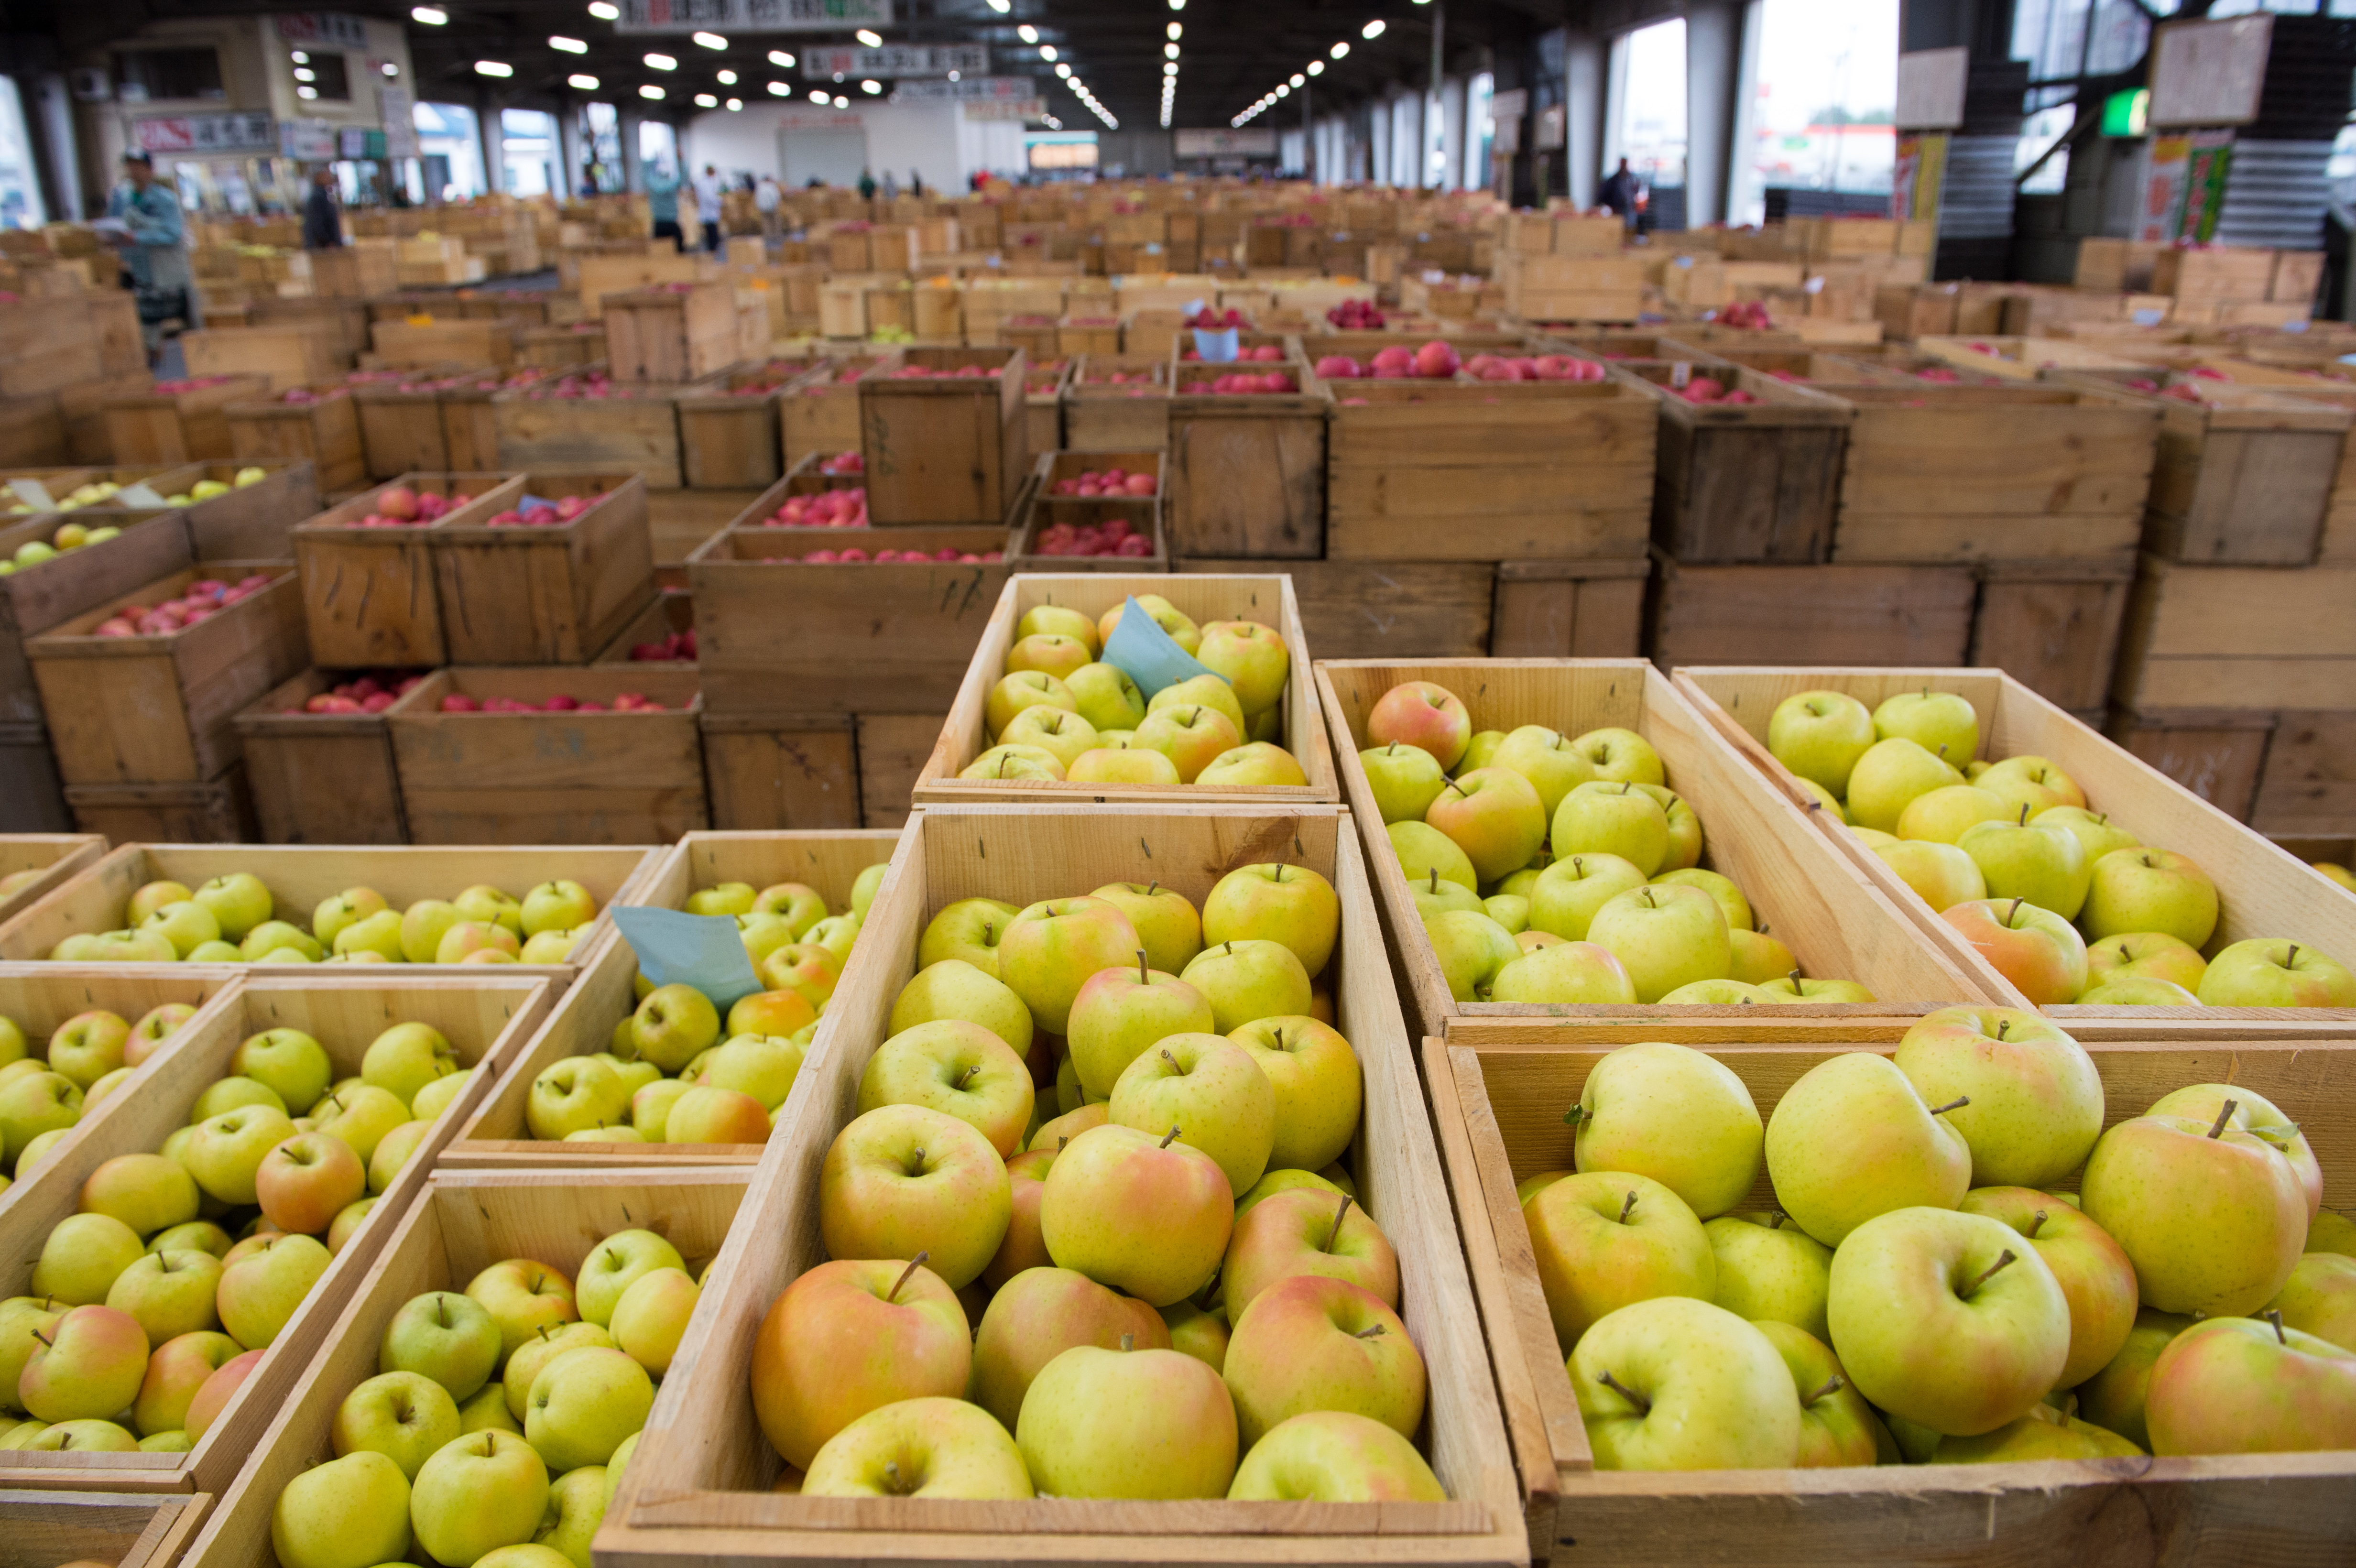 走進弘前市蘋果交易市場，看到的是這輩子見過最多的蘋果，撲鼻而來也是滿室的蘋果香。